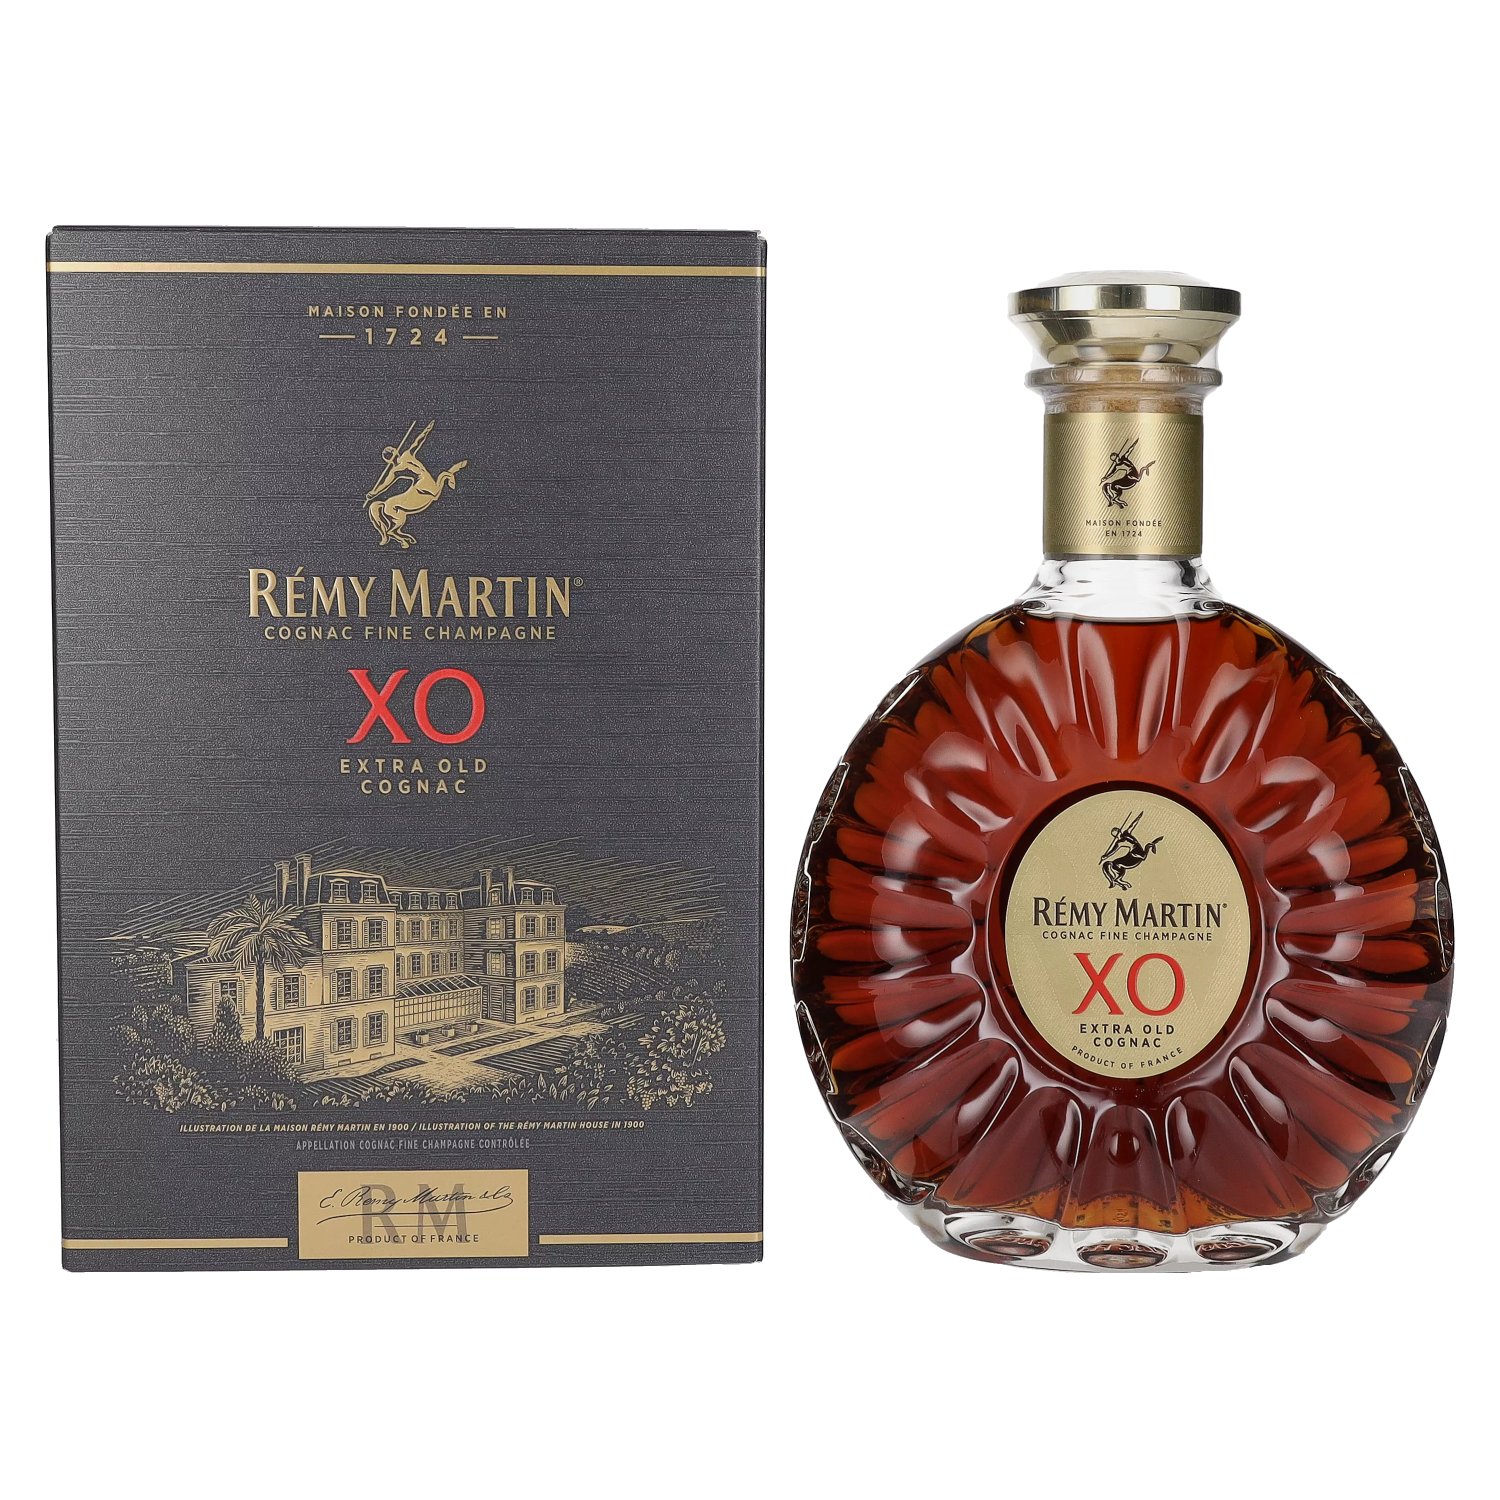 Rémy Martin XO Special - Old Liquor Company